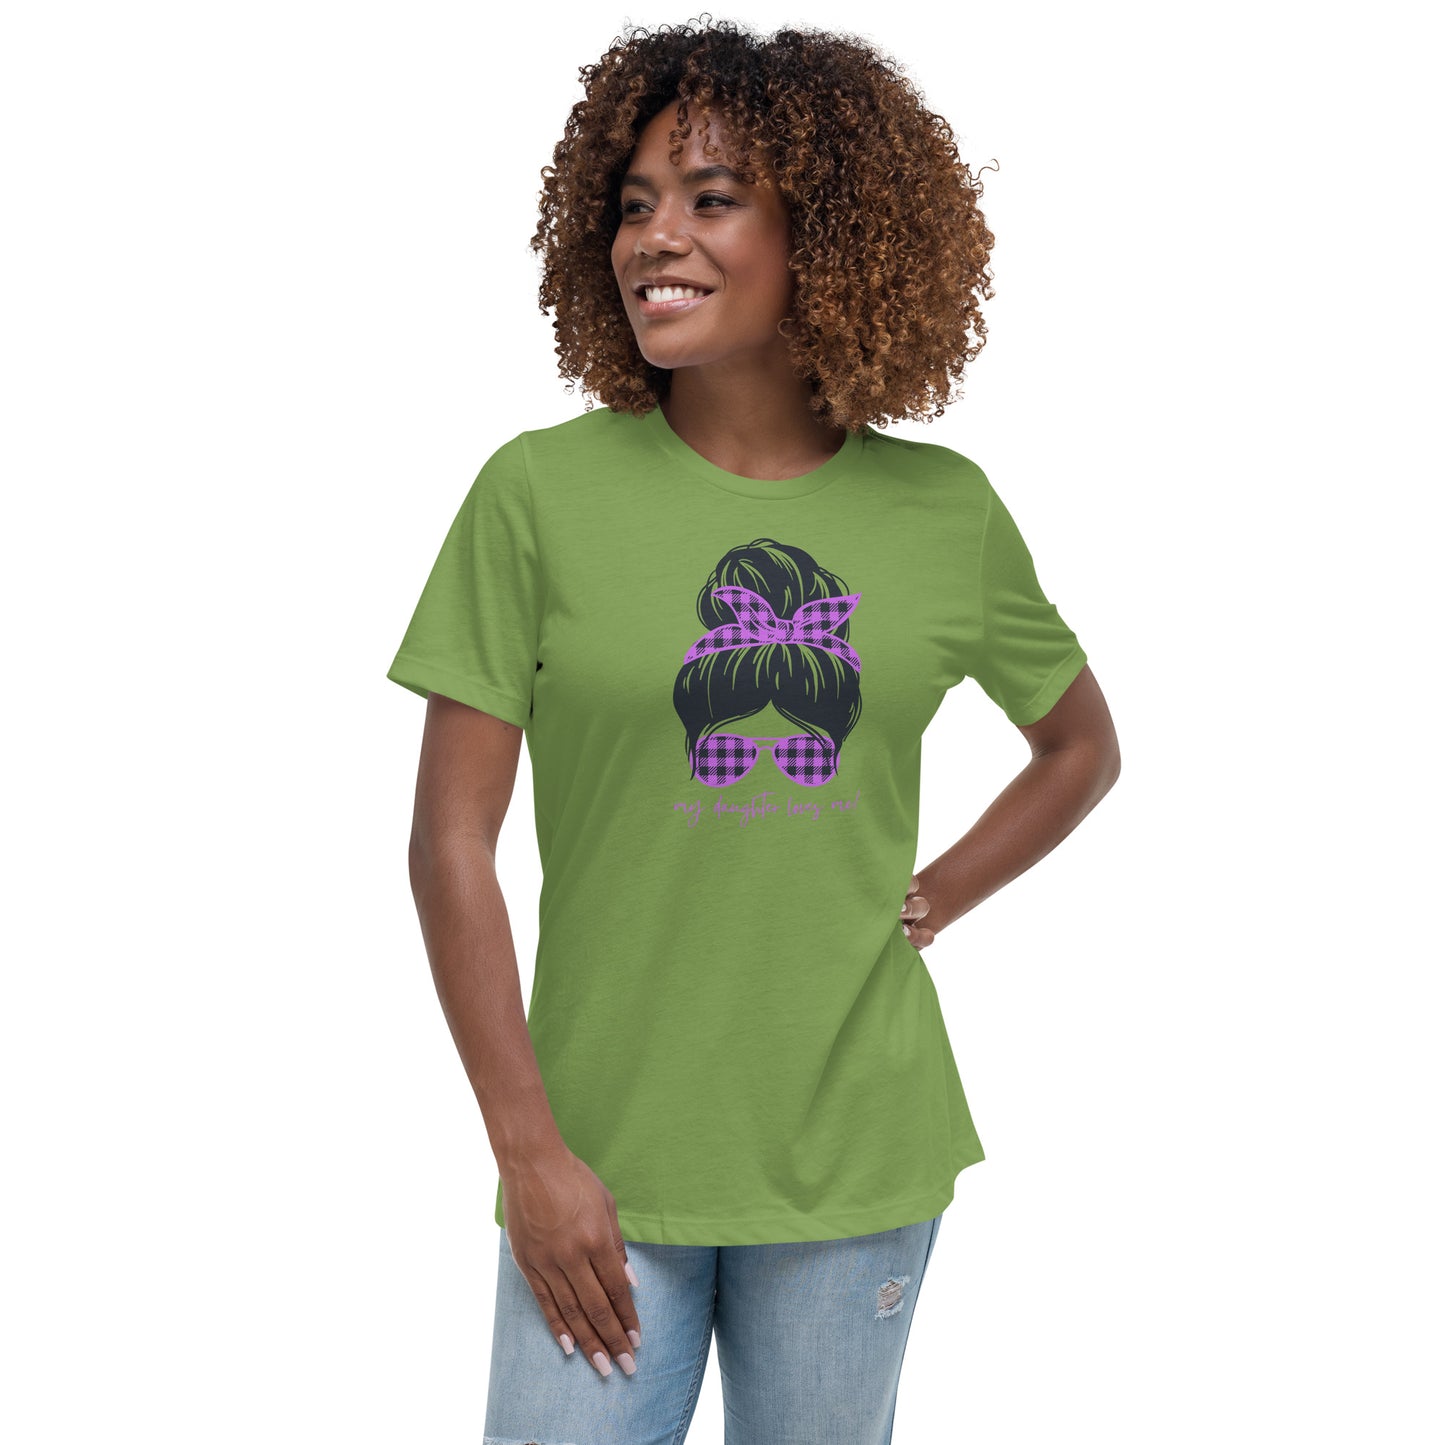 Women's Relaxed T-Shirt - My daughter loves me! T-shirt Stylin' Spirt   